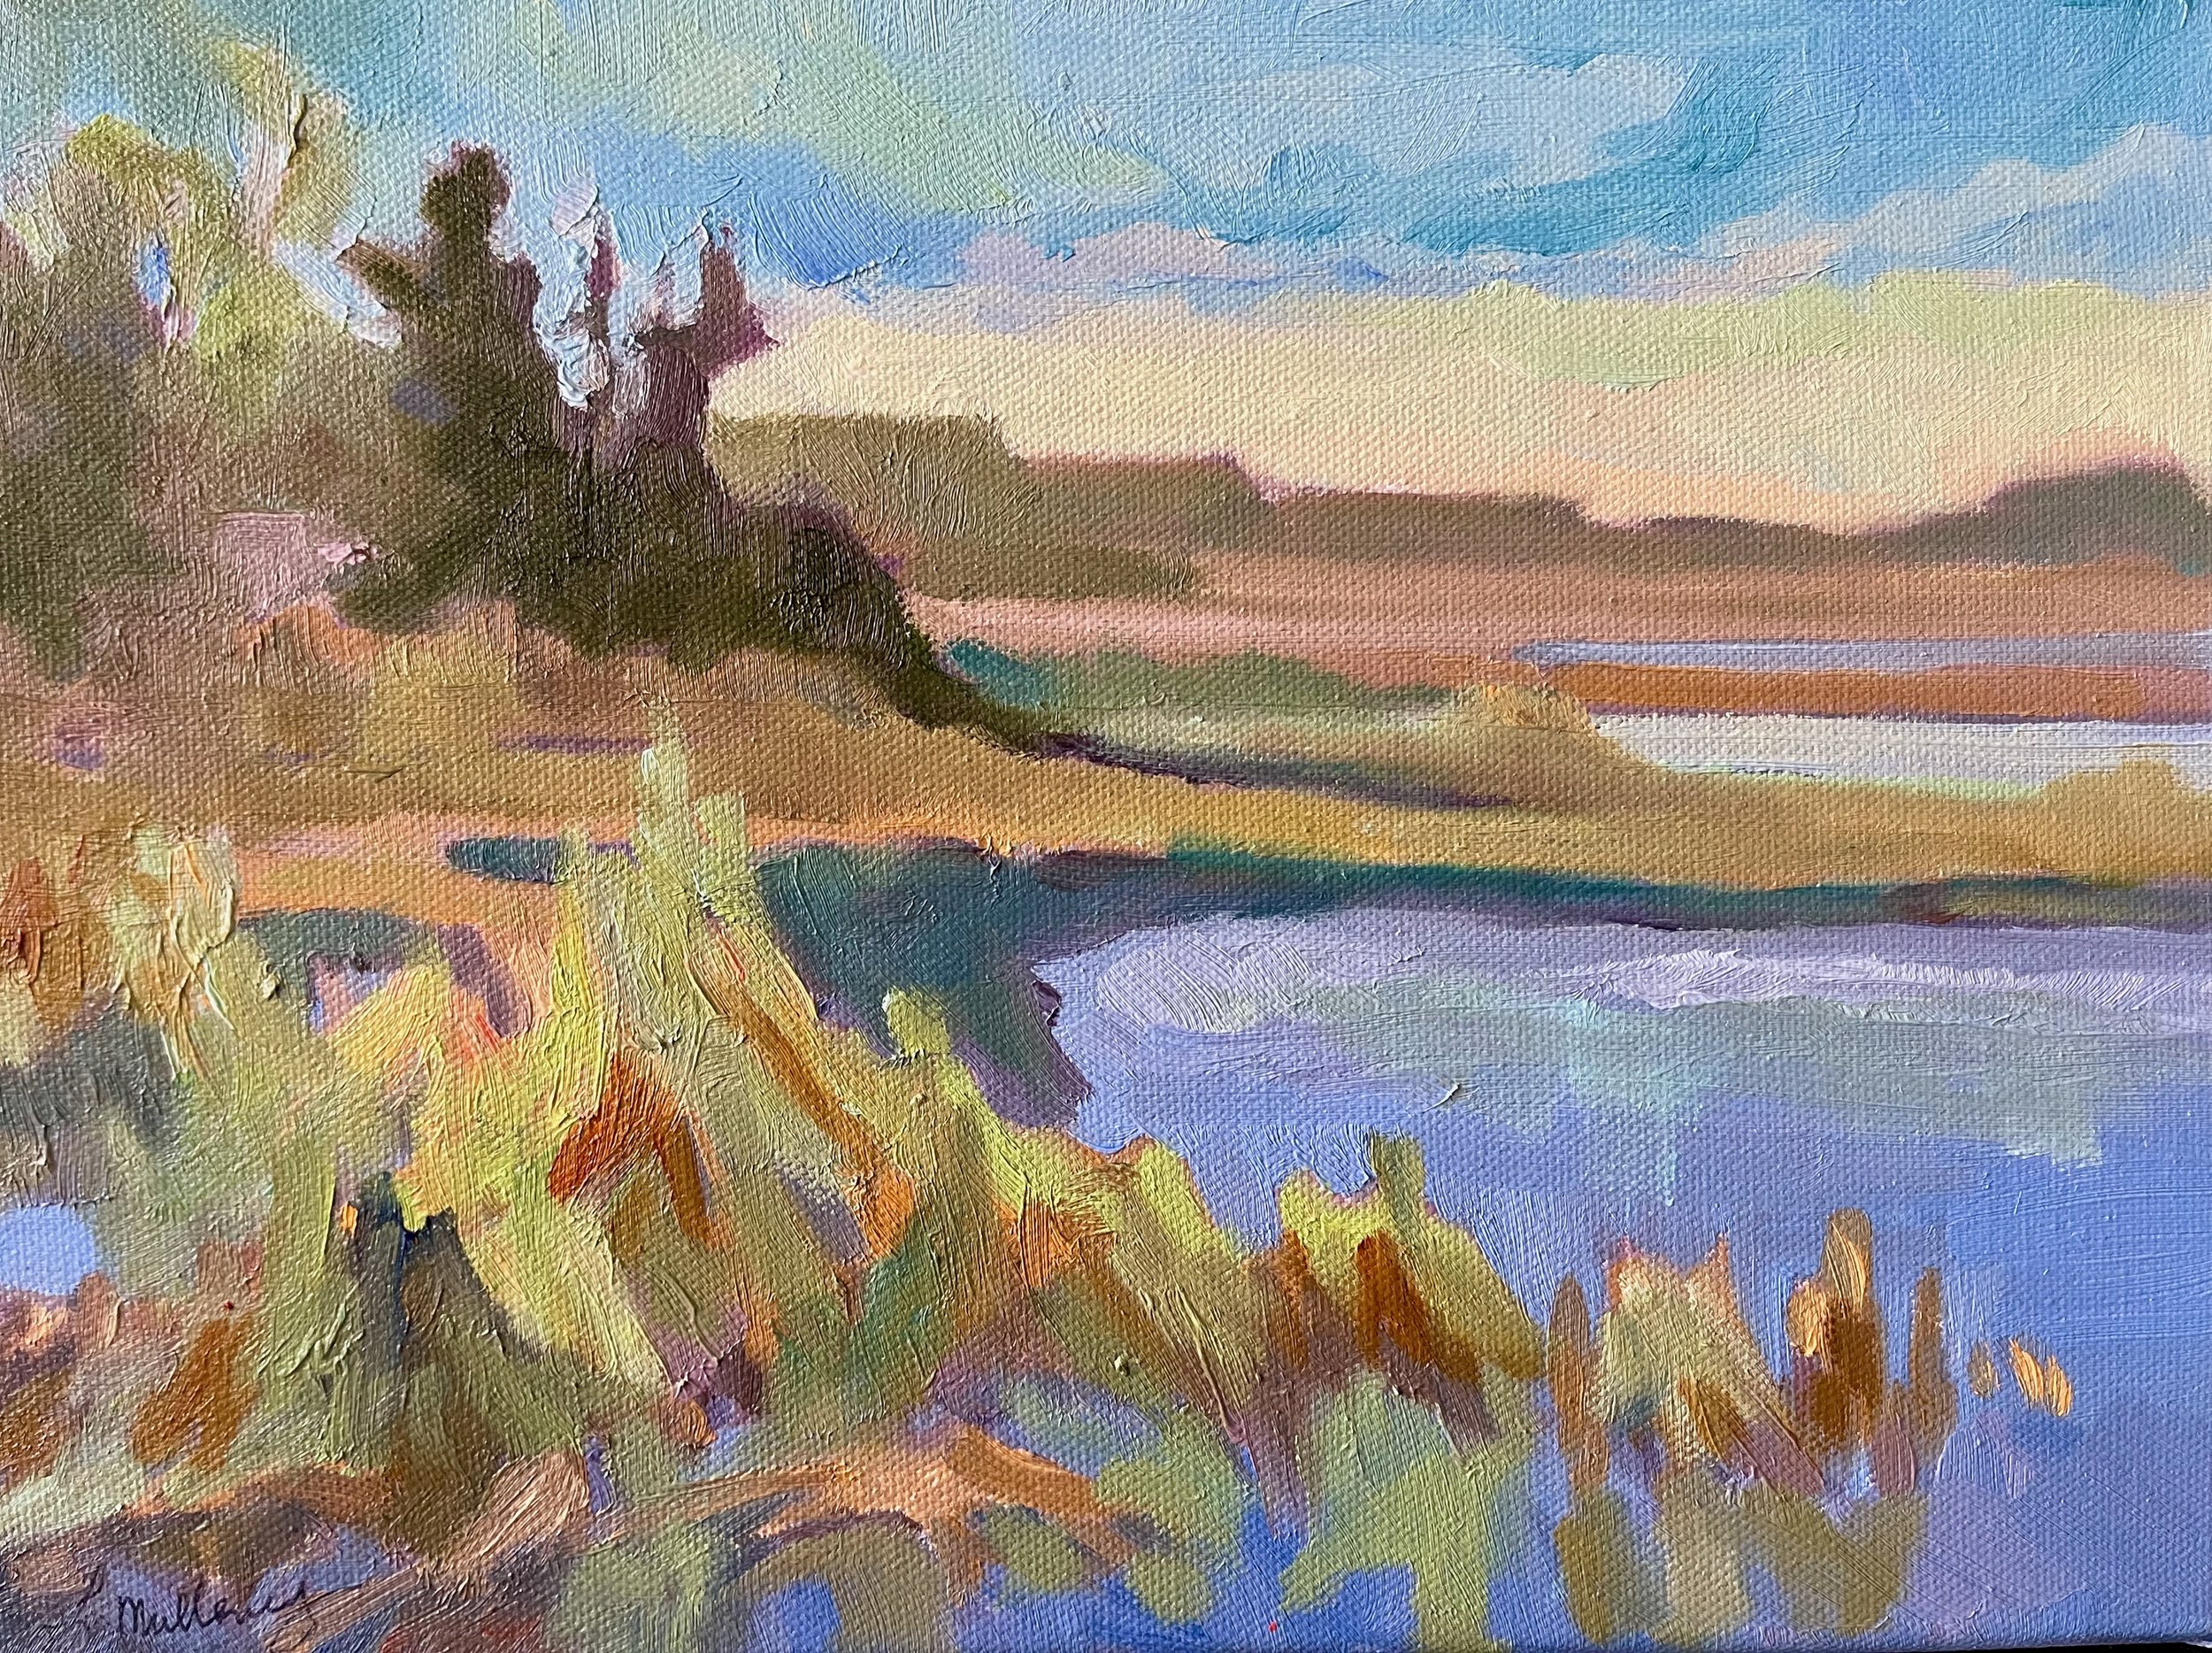 Spring Wetlands, 9x12